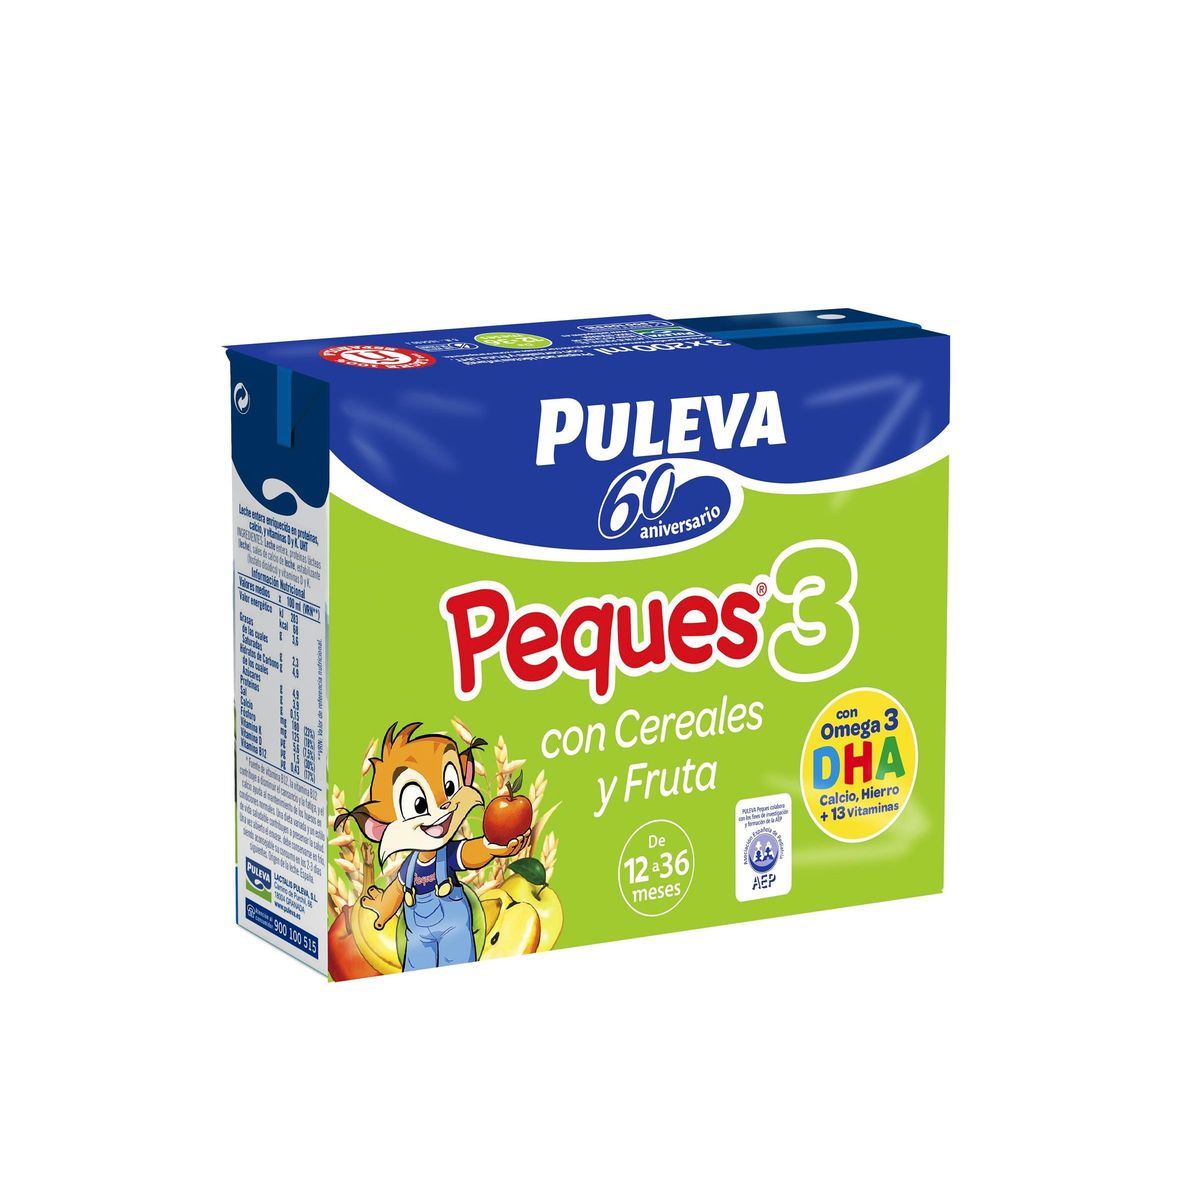 Preparado lácteo infantil de crecimiento con cereales y fruta de 12 a 36  meses Puleva Peques 3 pack de 3 unidades de 200 ml.